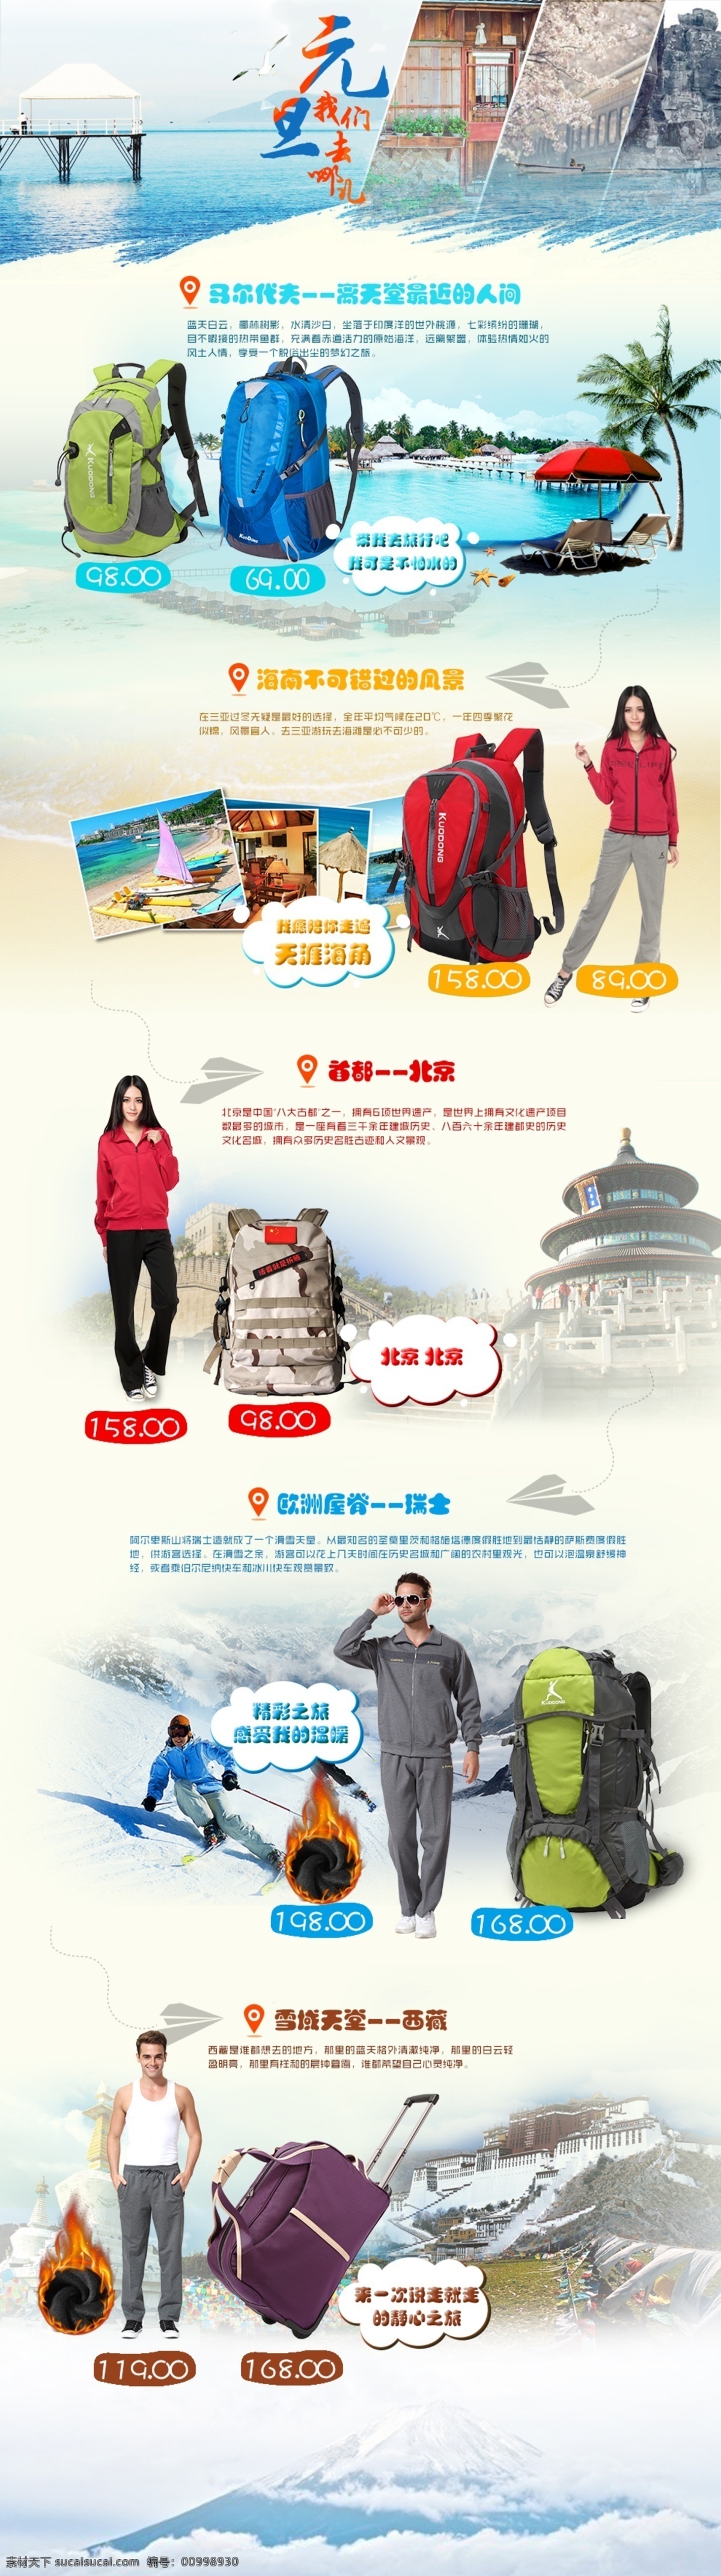 元旦 活动 页面 北京 海滩 滑雪 马尔代夫 拉萨 原创设计 原创淘宝设计